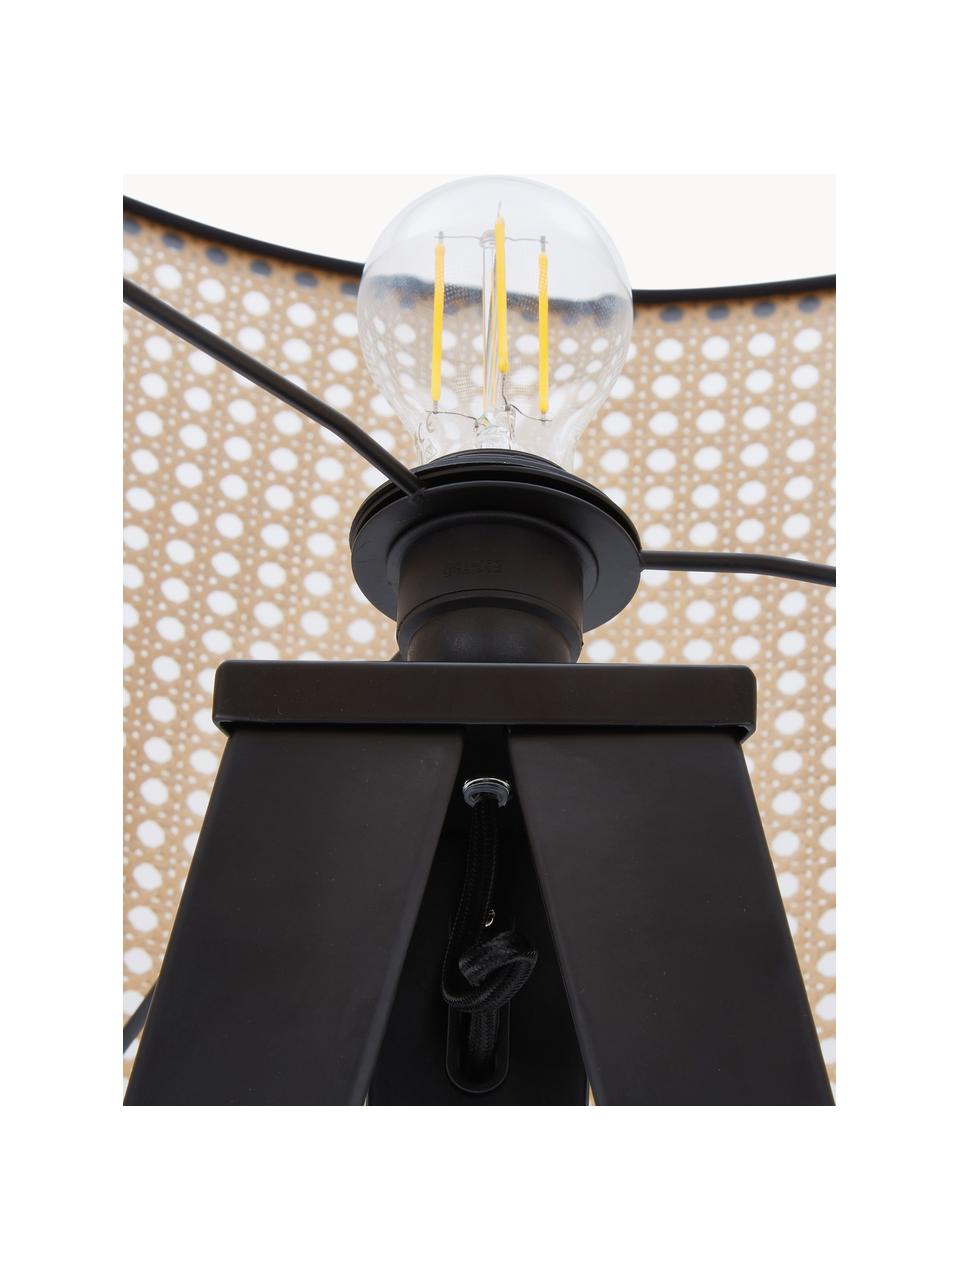 Tripod vloerlamp Vienna van Weens vlechtwerk, Lampenkap: kunststof, Lampvoet: gepoedercoat metaal, Zwart, lichtbruin, H 154cm